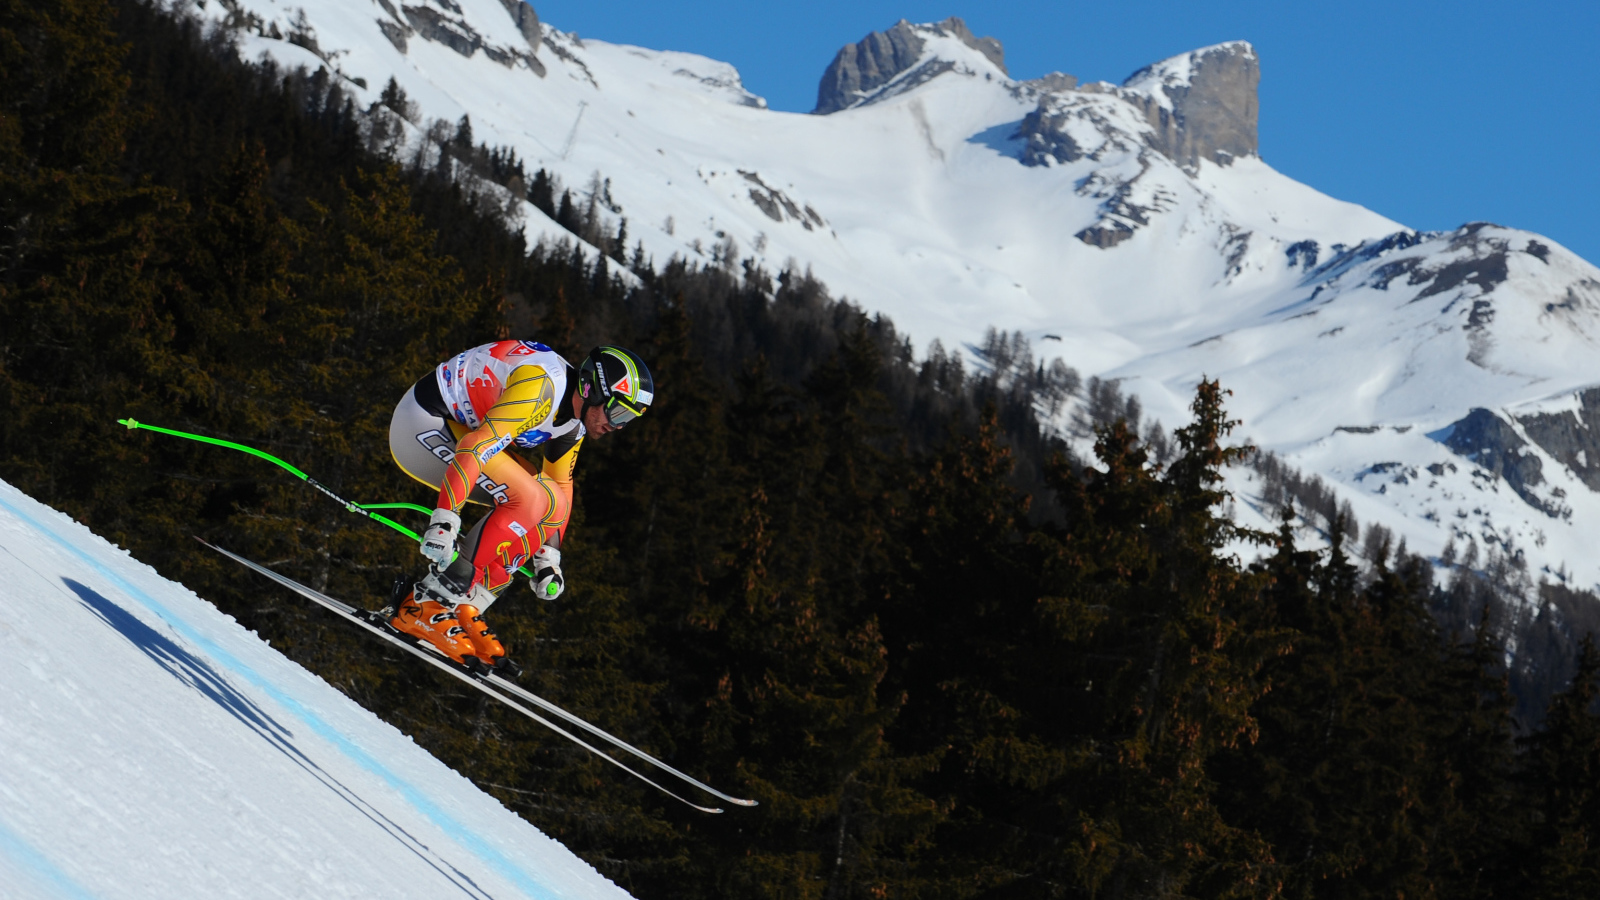 Ян Худек канадский лыжник обладатель бронзовой медали в Сочи